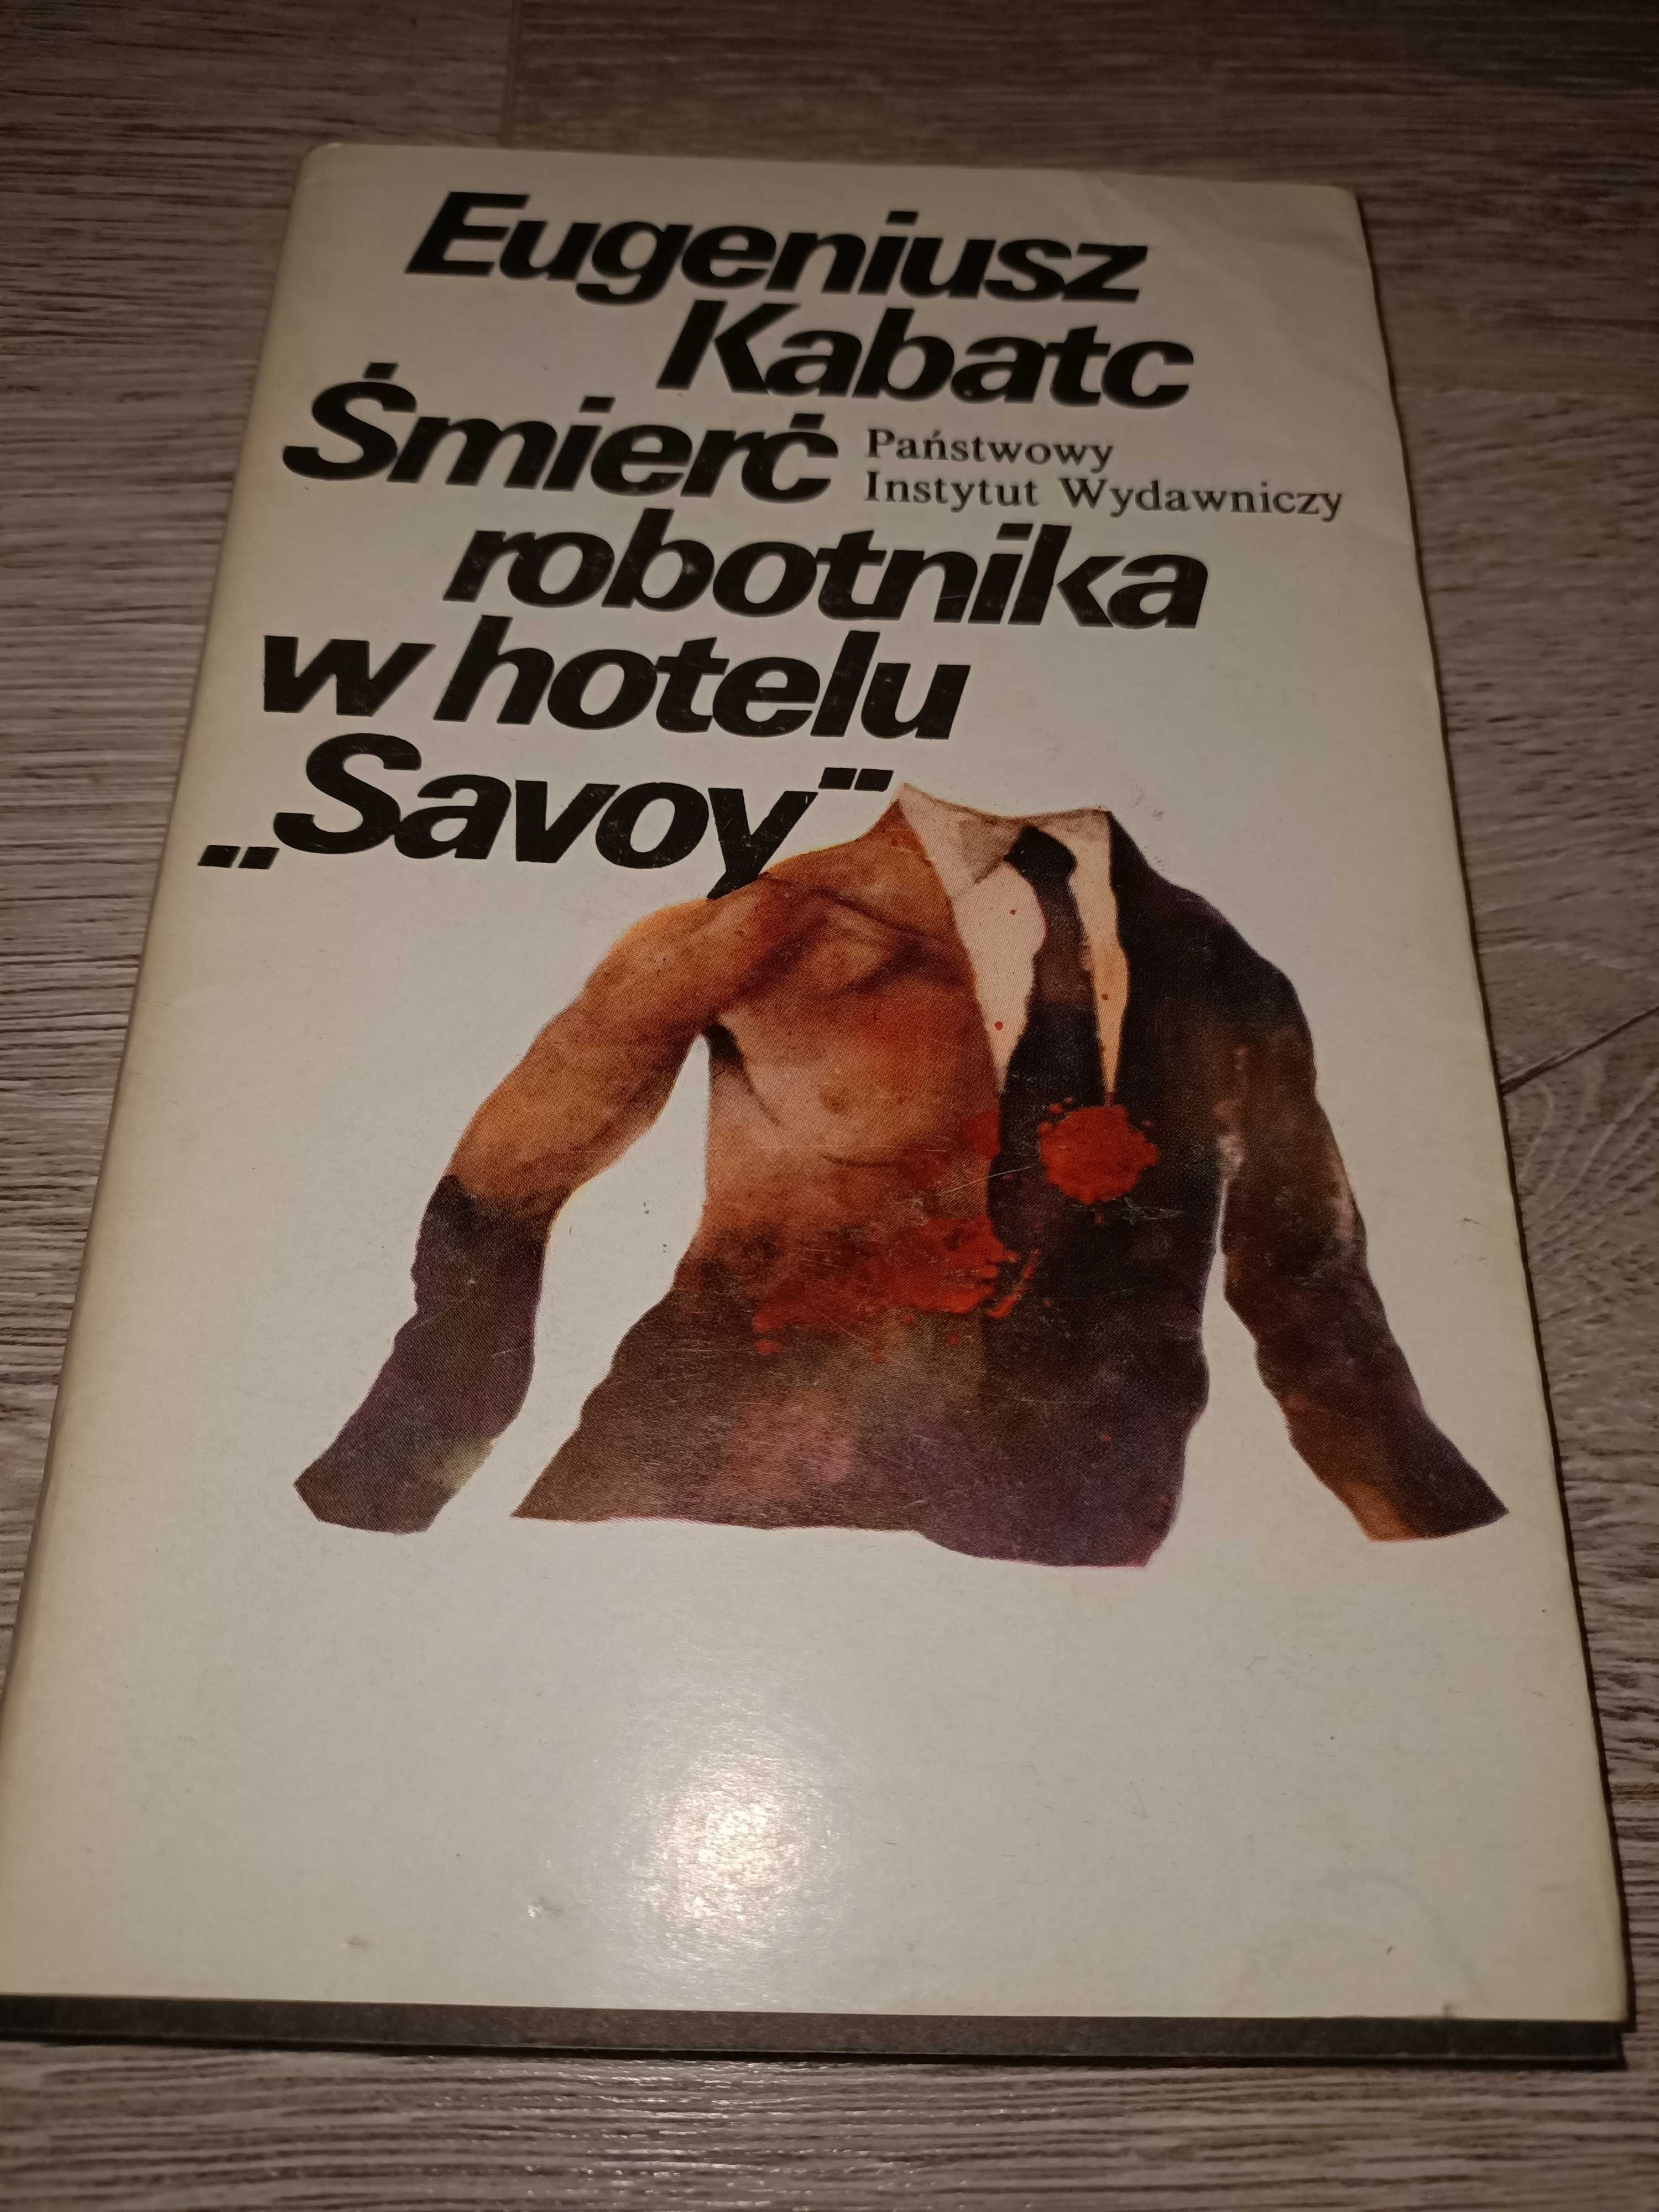 Śmierć robotnika w hotelu "Savoy" Eugeniusz Kabatc